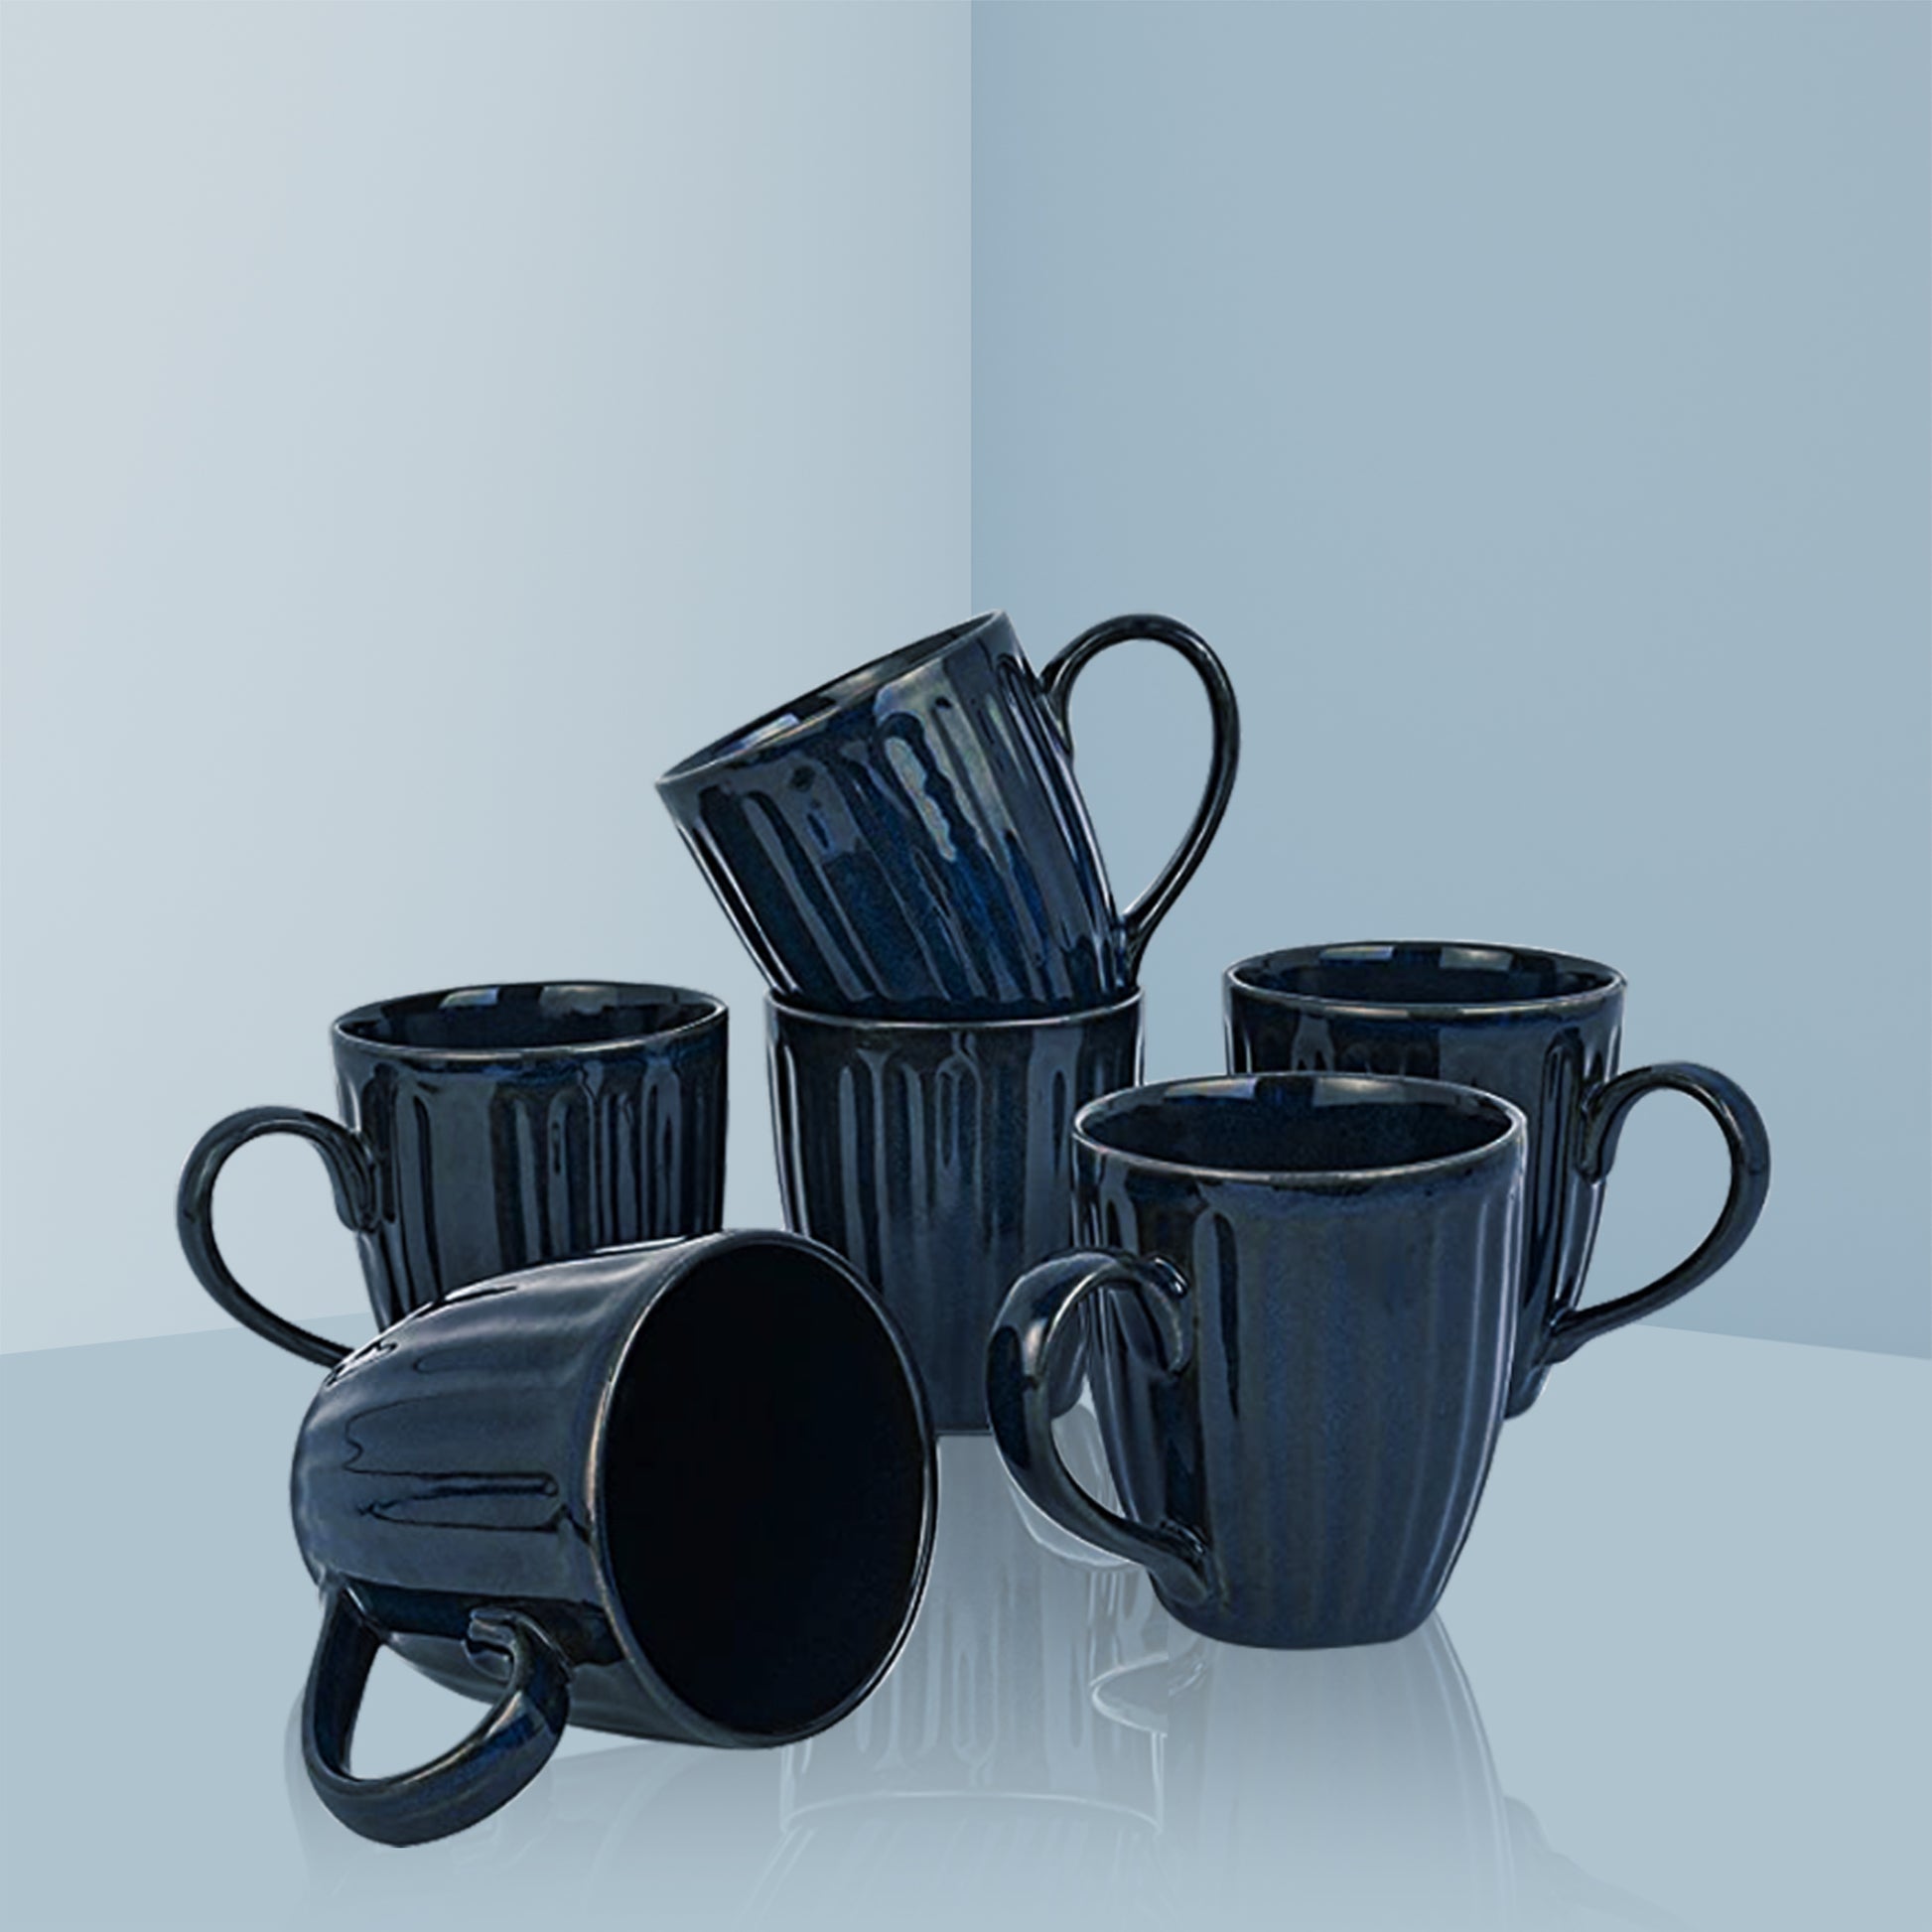 Bluey Coffee Mugs for Sale